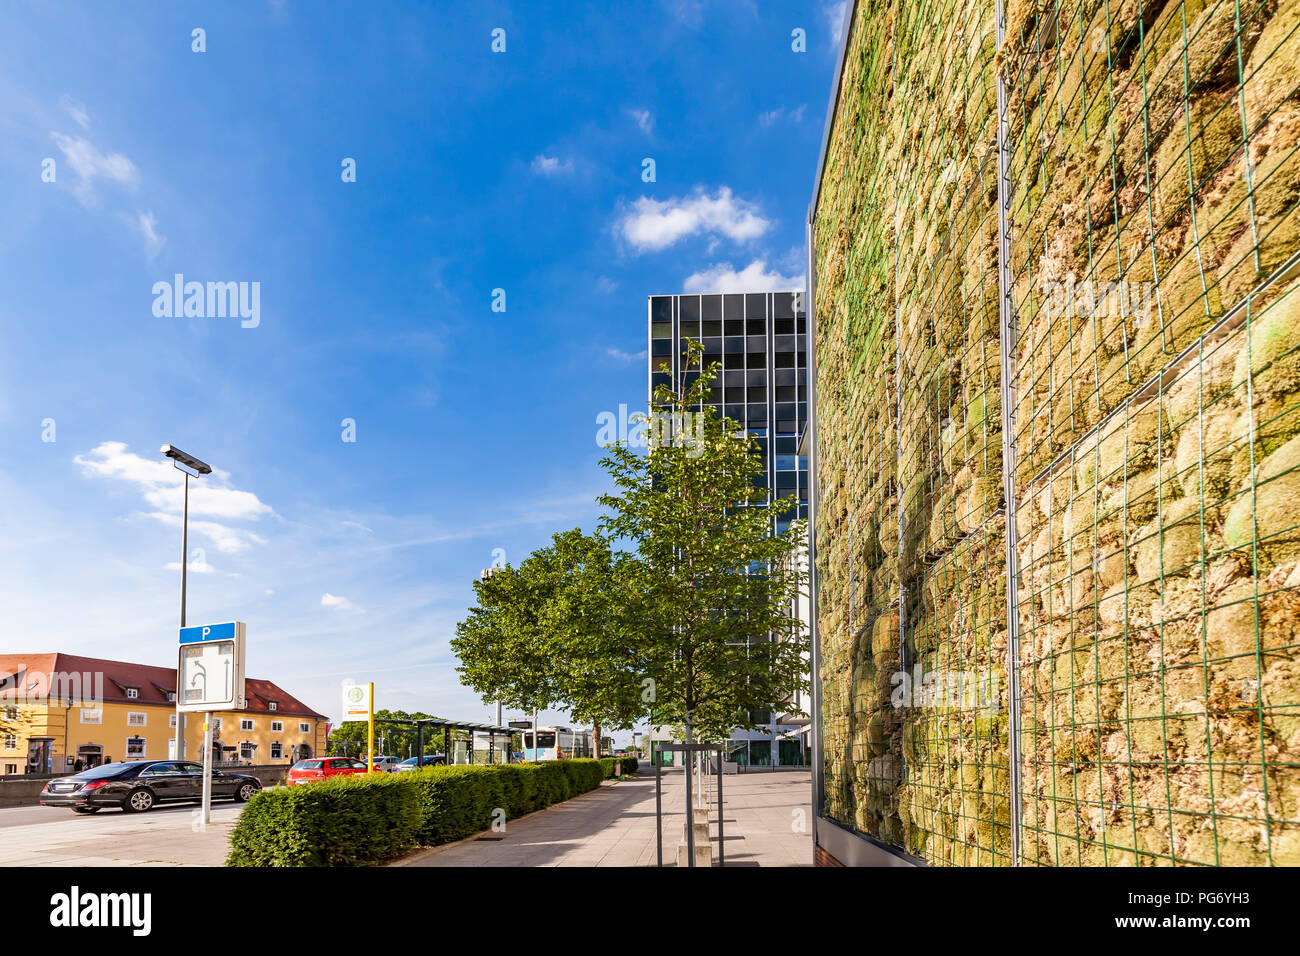 Deutschland, Stuttgart, an der Wand mit Moos in der Nähe von Bushaltestelle, Kontrolle der Luftverschmutzung Stockfoto